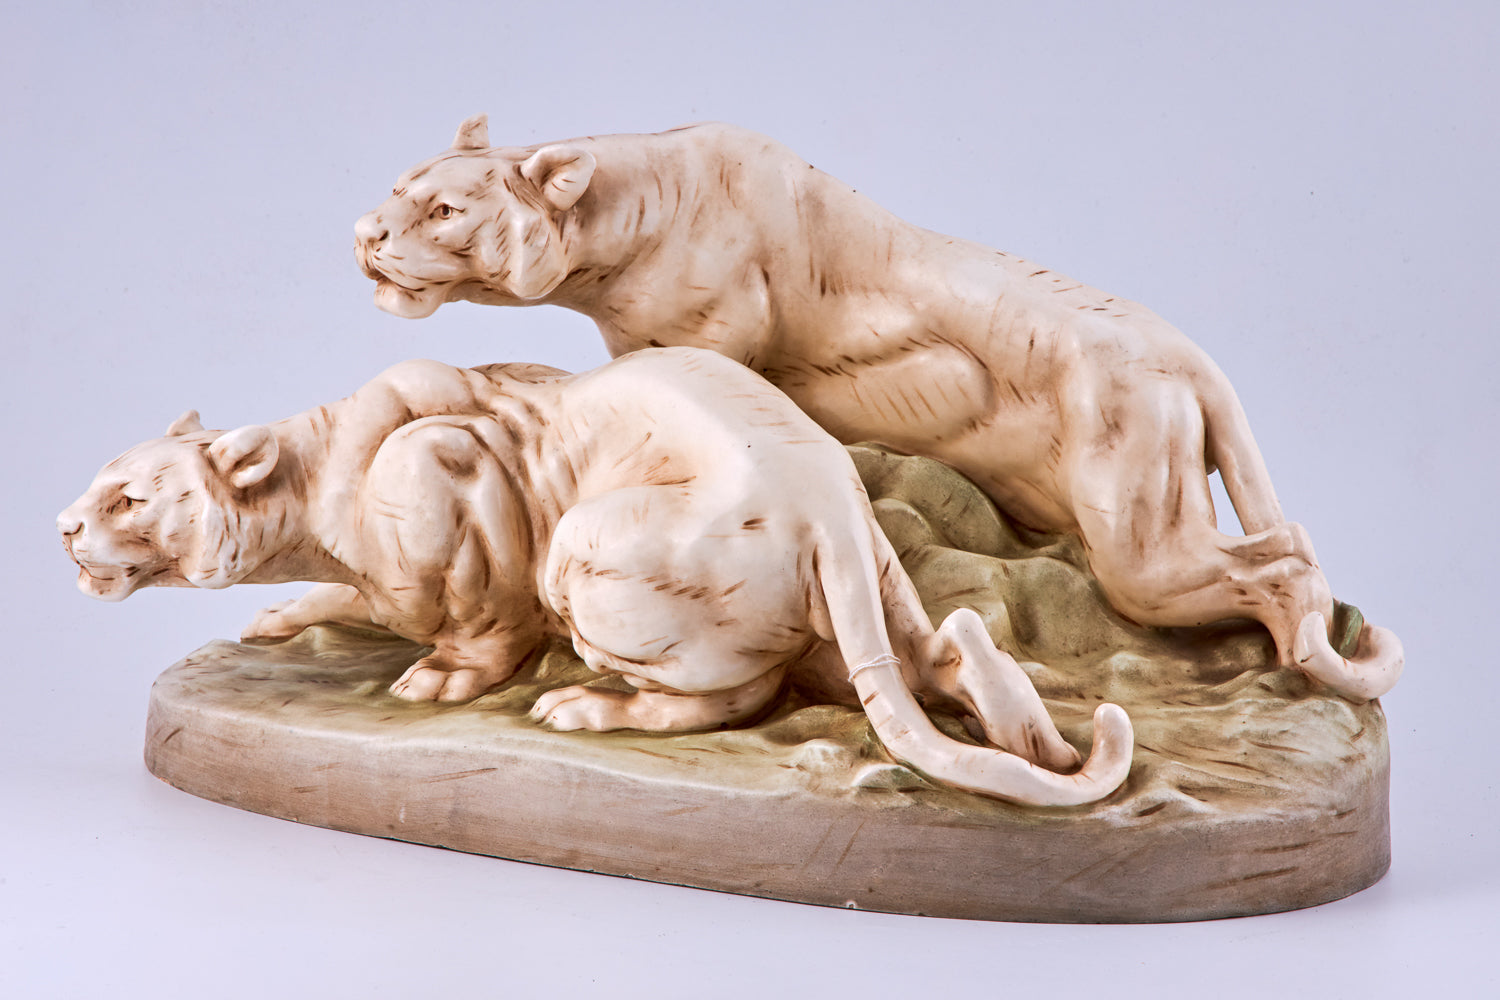 Escultura minimalista de porcelana de dos tigres.